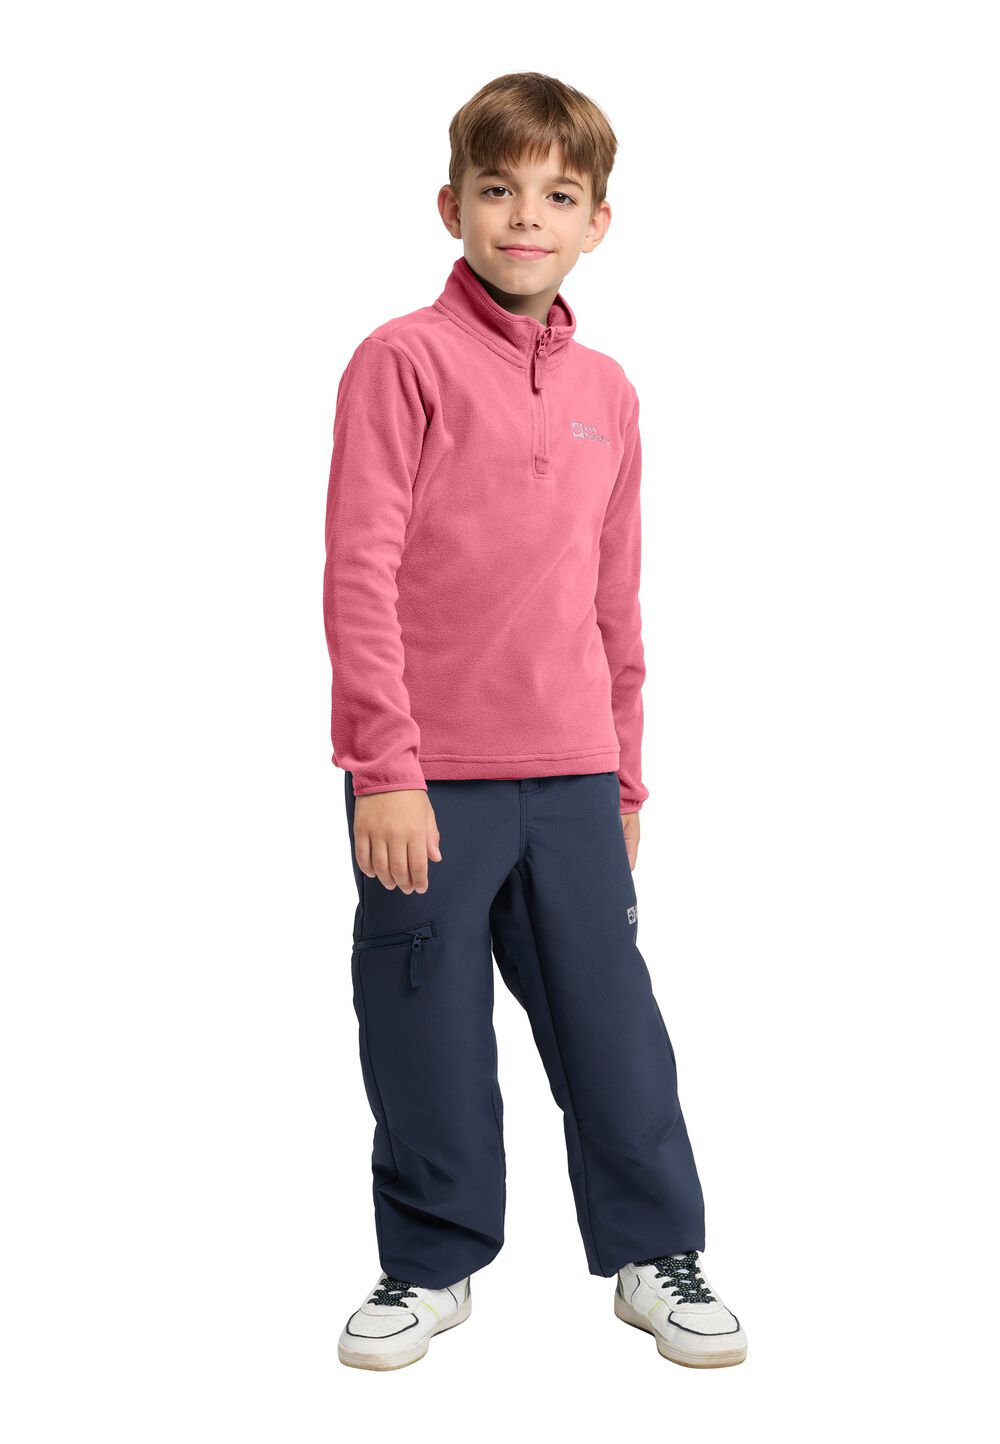 Jack Wolfskin Taunus Halfzip Kids Fleece trui Kinderen 104 soft pink soft pink